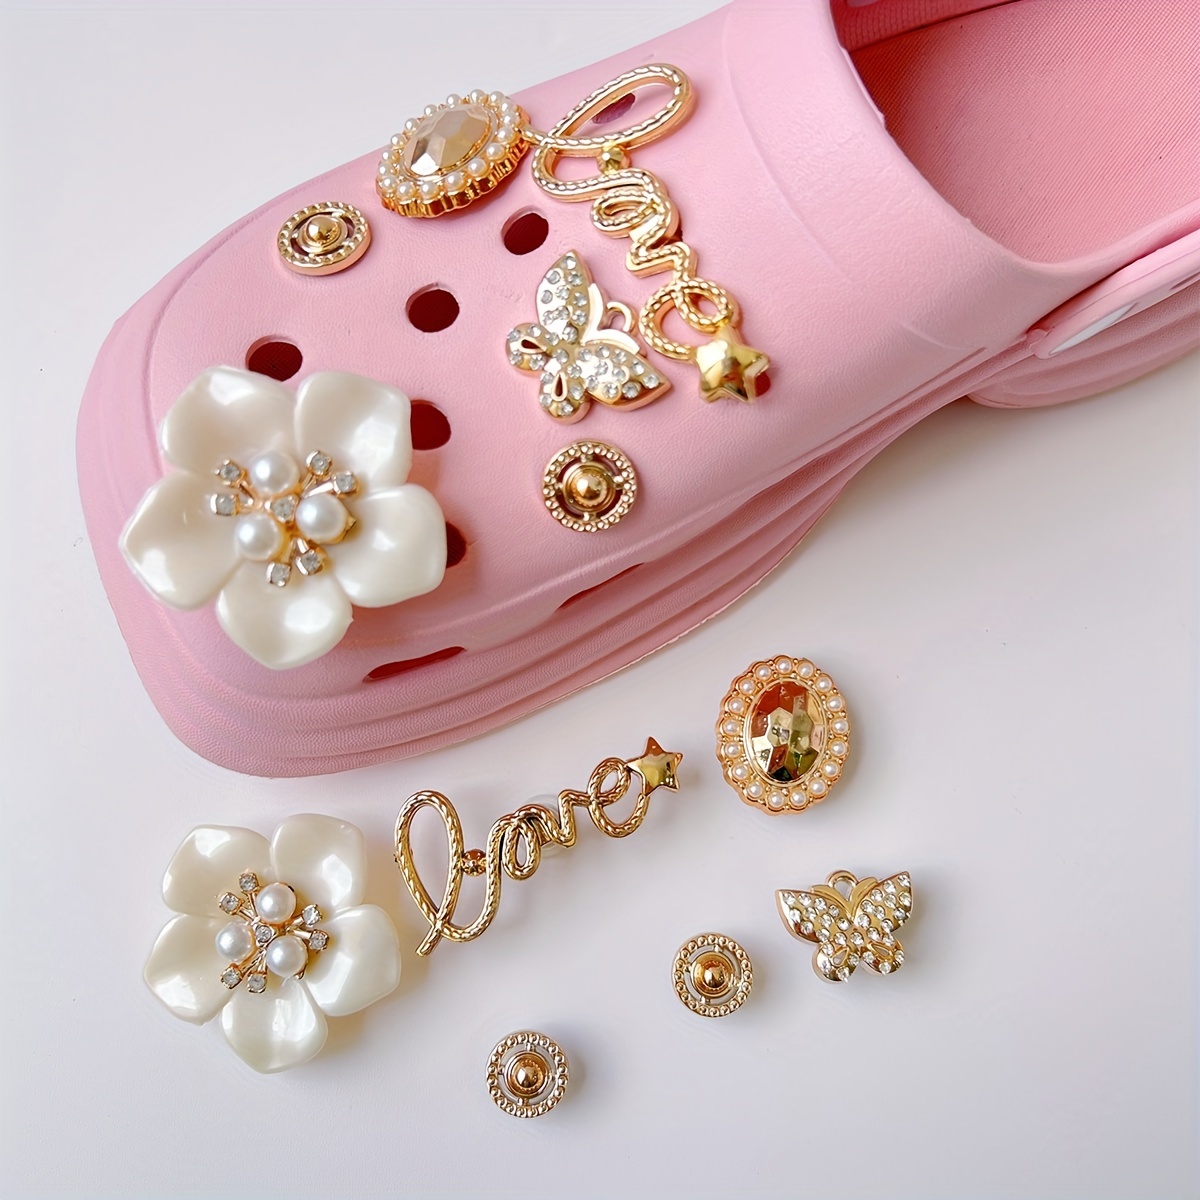 New Arrival 1Pcs English Letters PVC Pink Garden Shoe Charms Sandals  Accessories Simple Shoe Buckle Fit Croc Jibz Charm